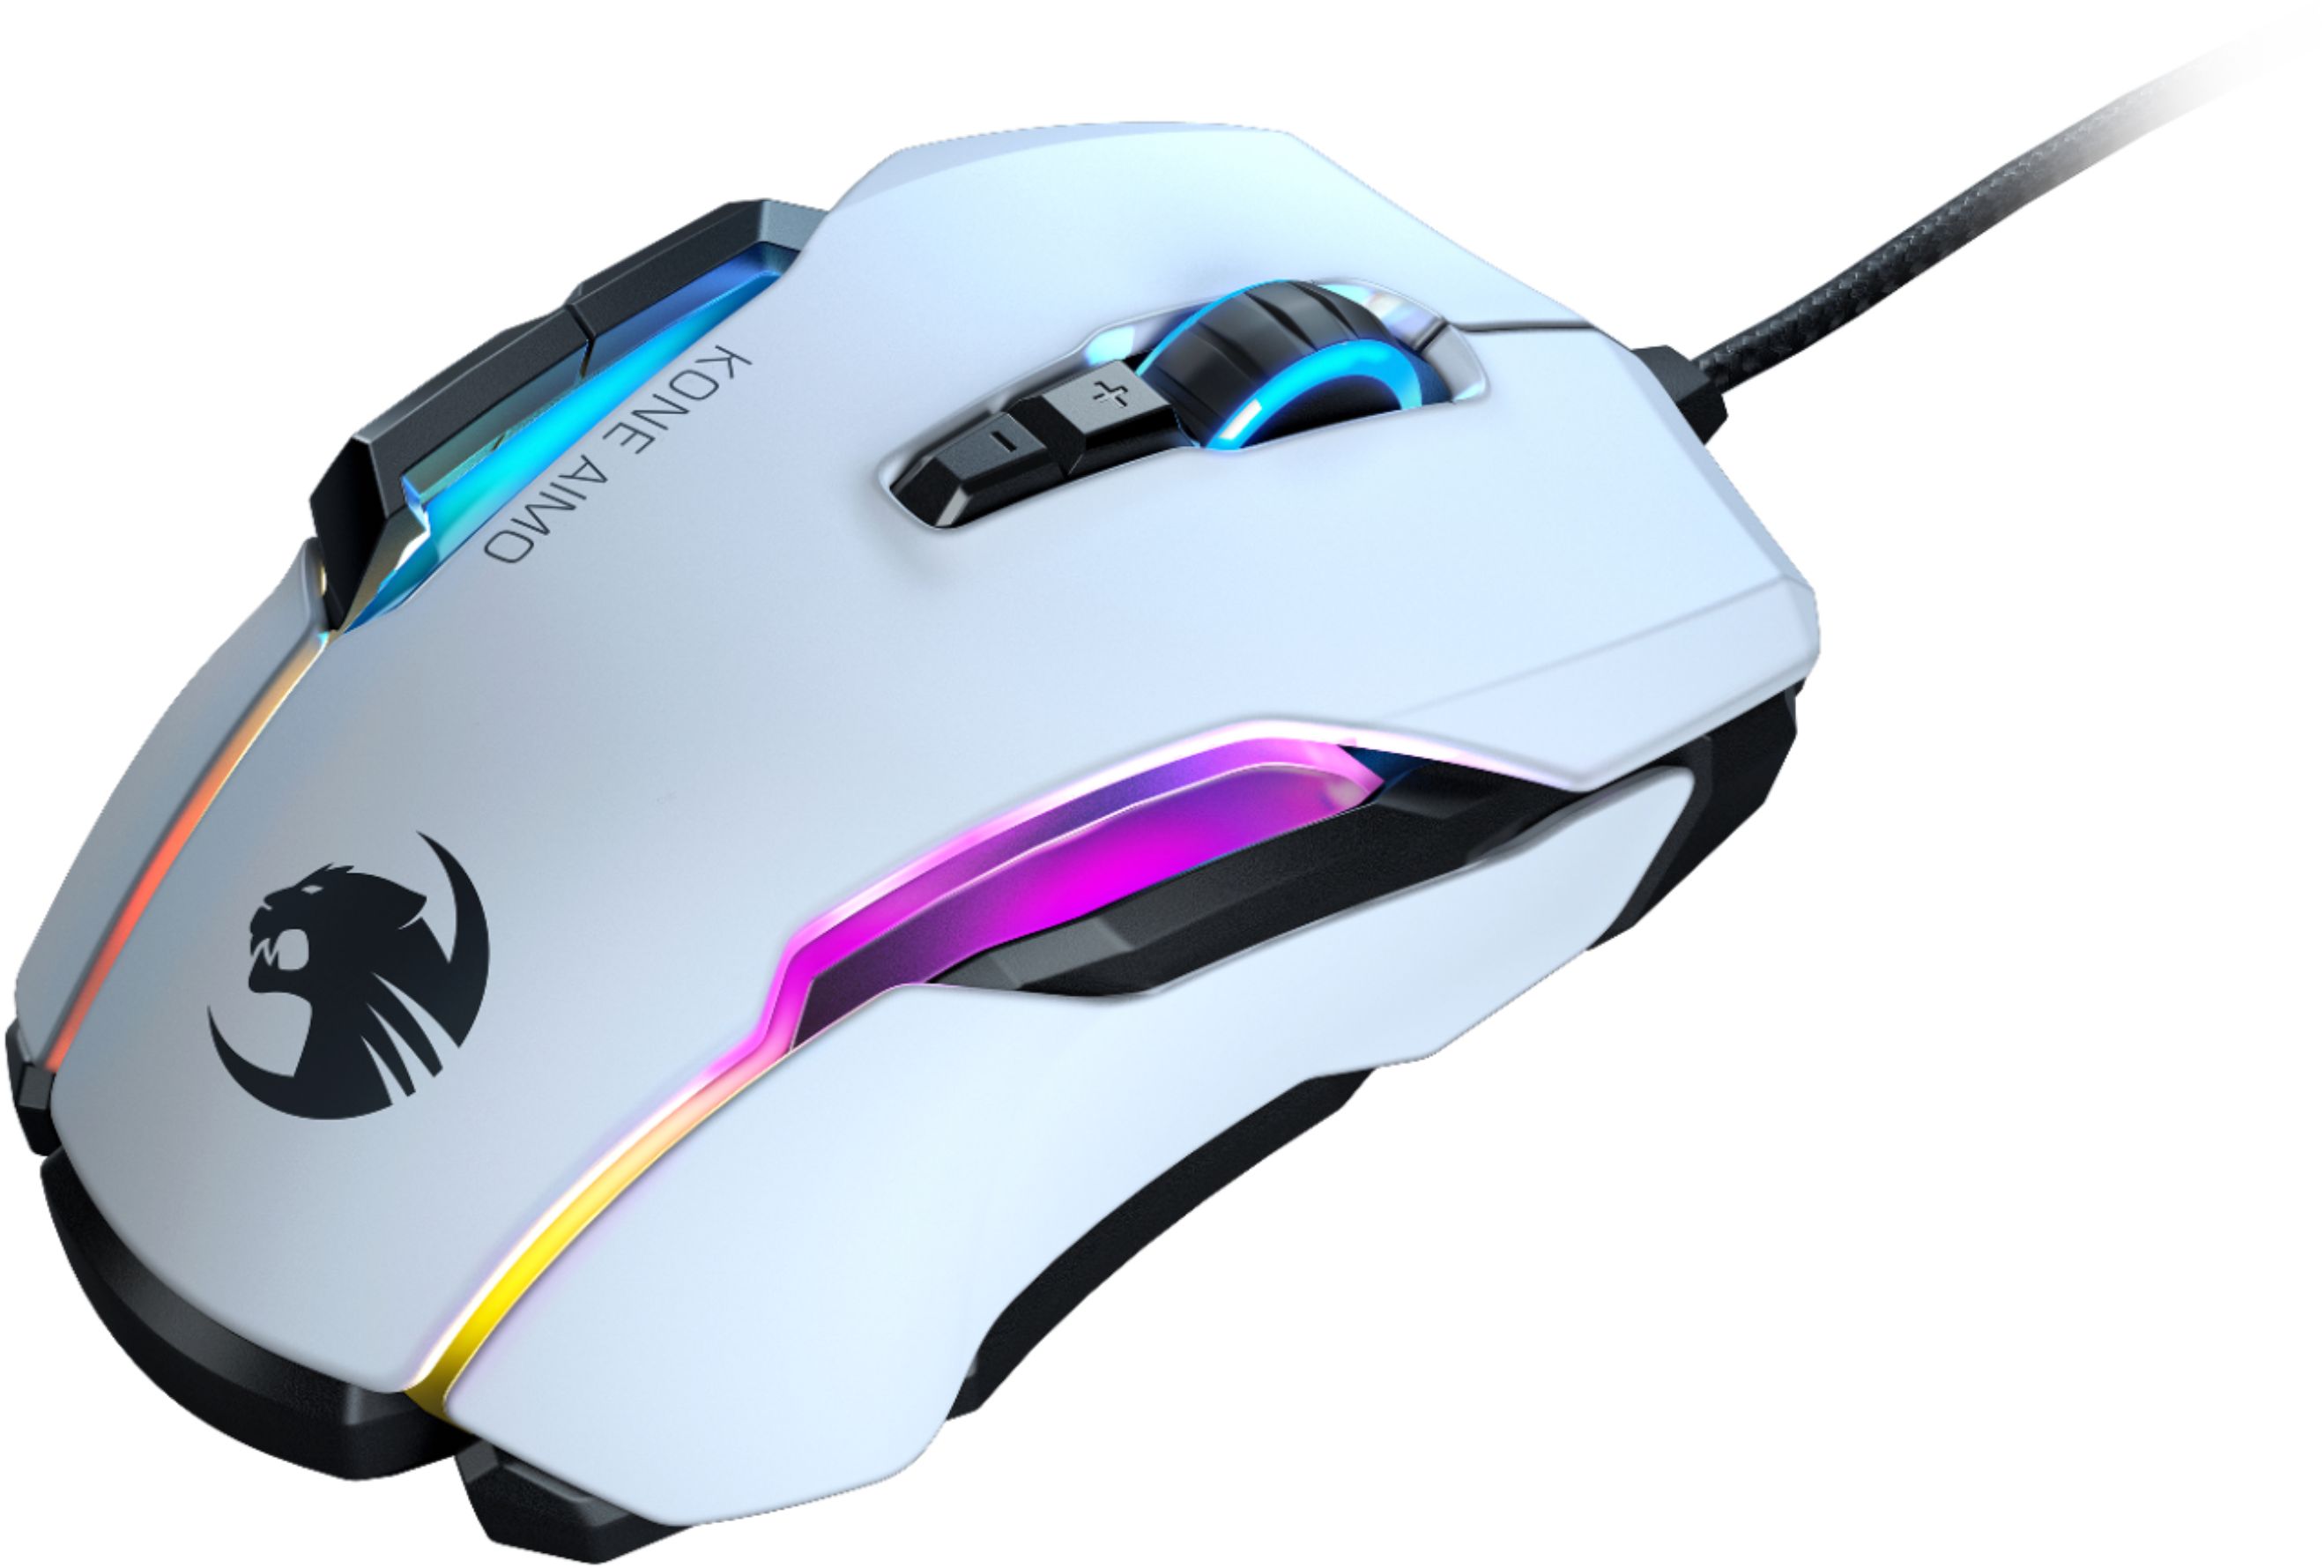 Kone Aimo Software : Roccat Kone Aimo Mouse Usb White Mice ...